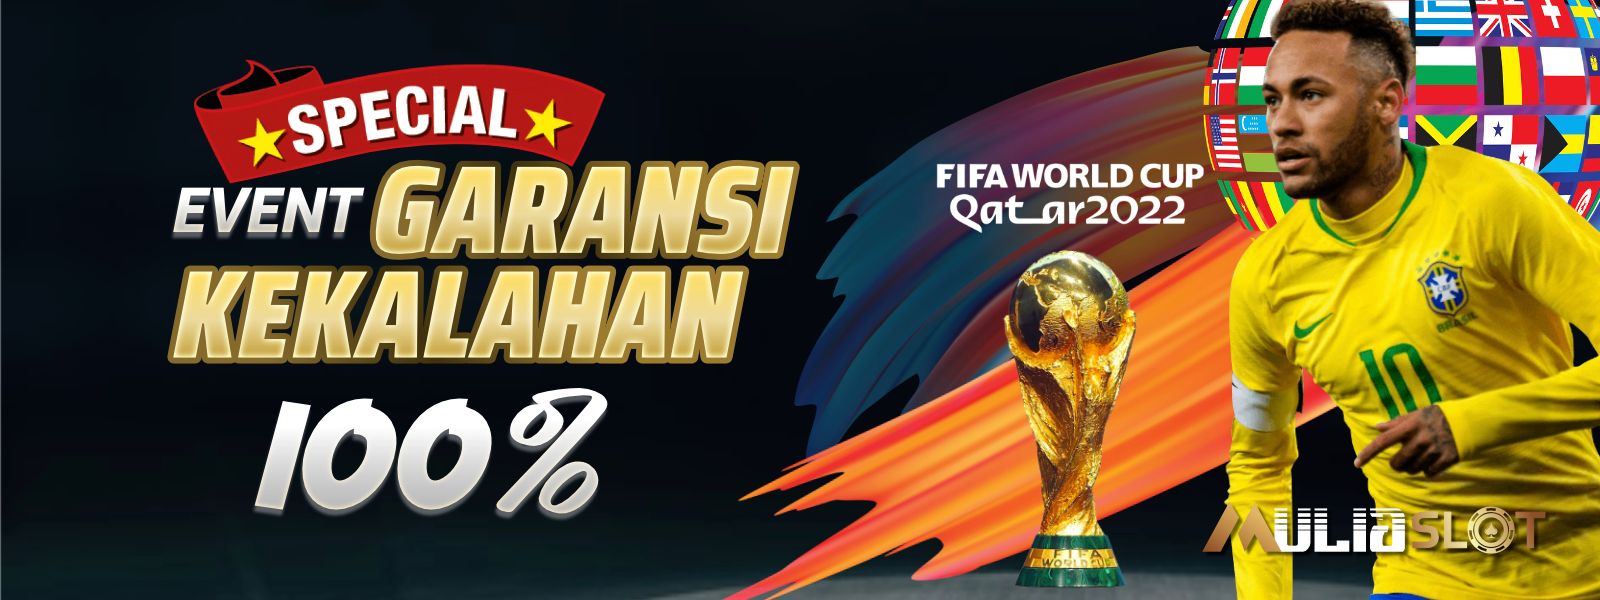 EVENT GARANSI KEKALAHAN 100% World Cup 2022